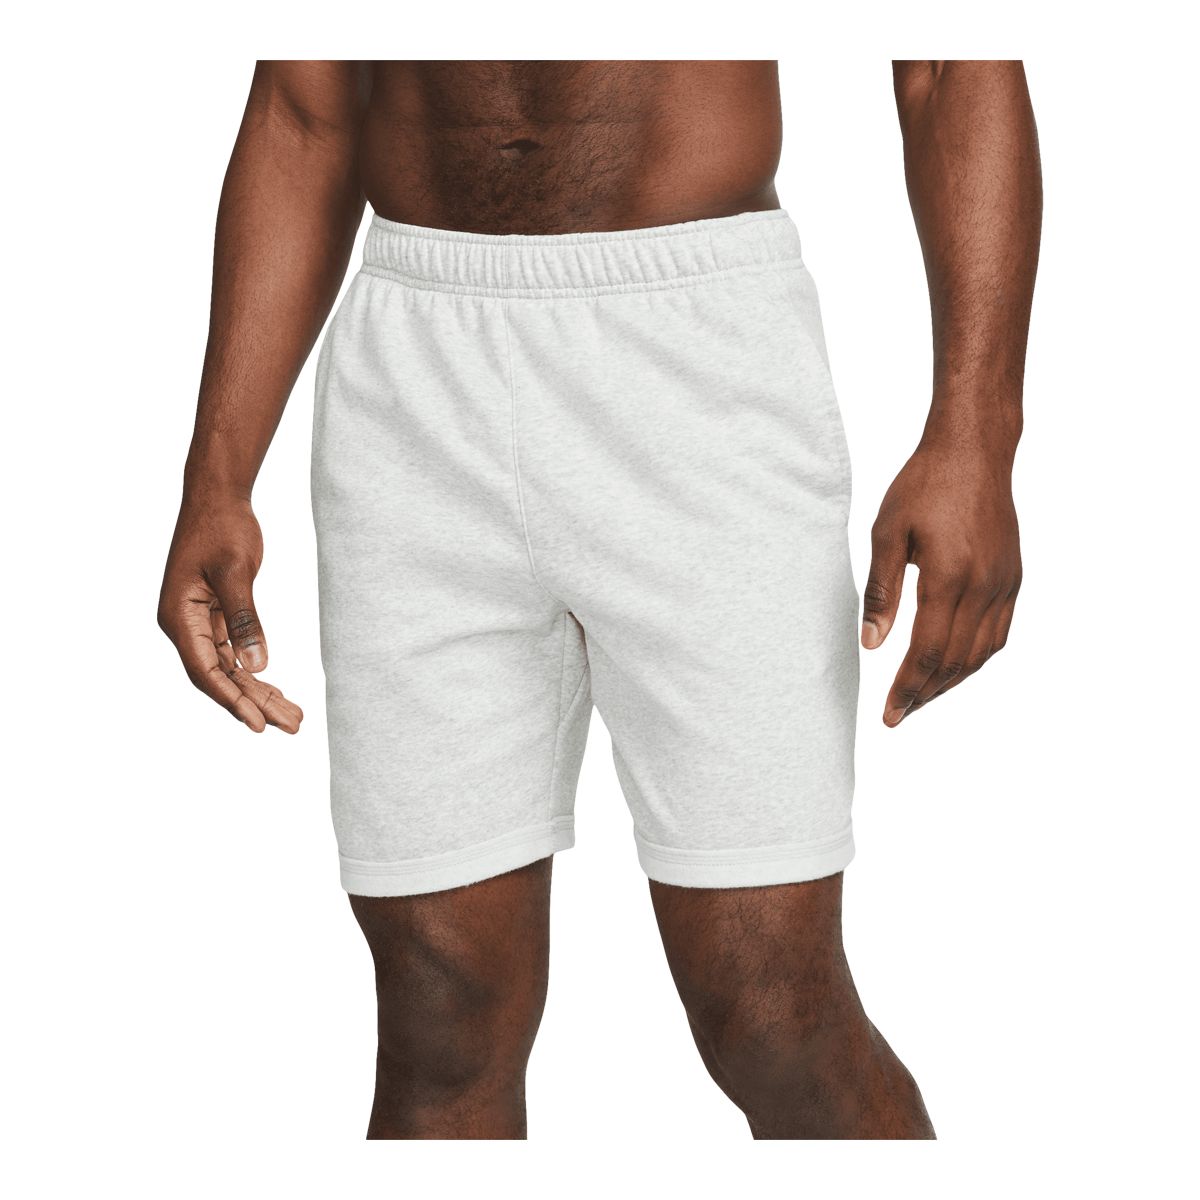 Nike Men's Yoga Core Shorts